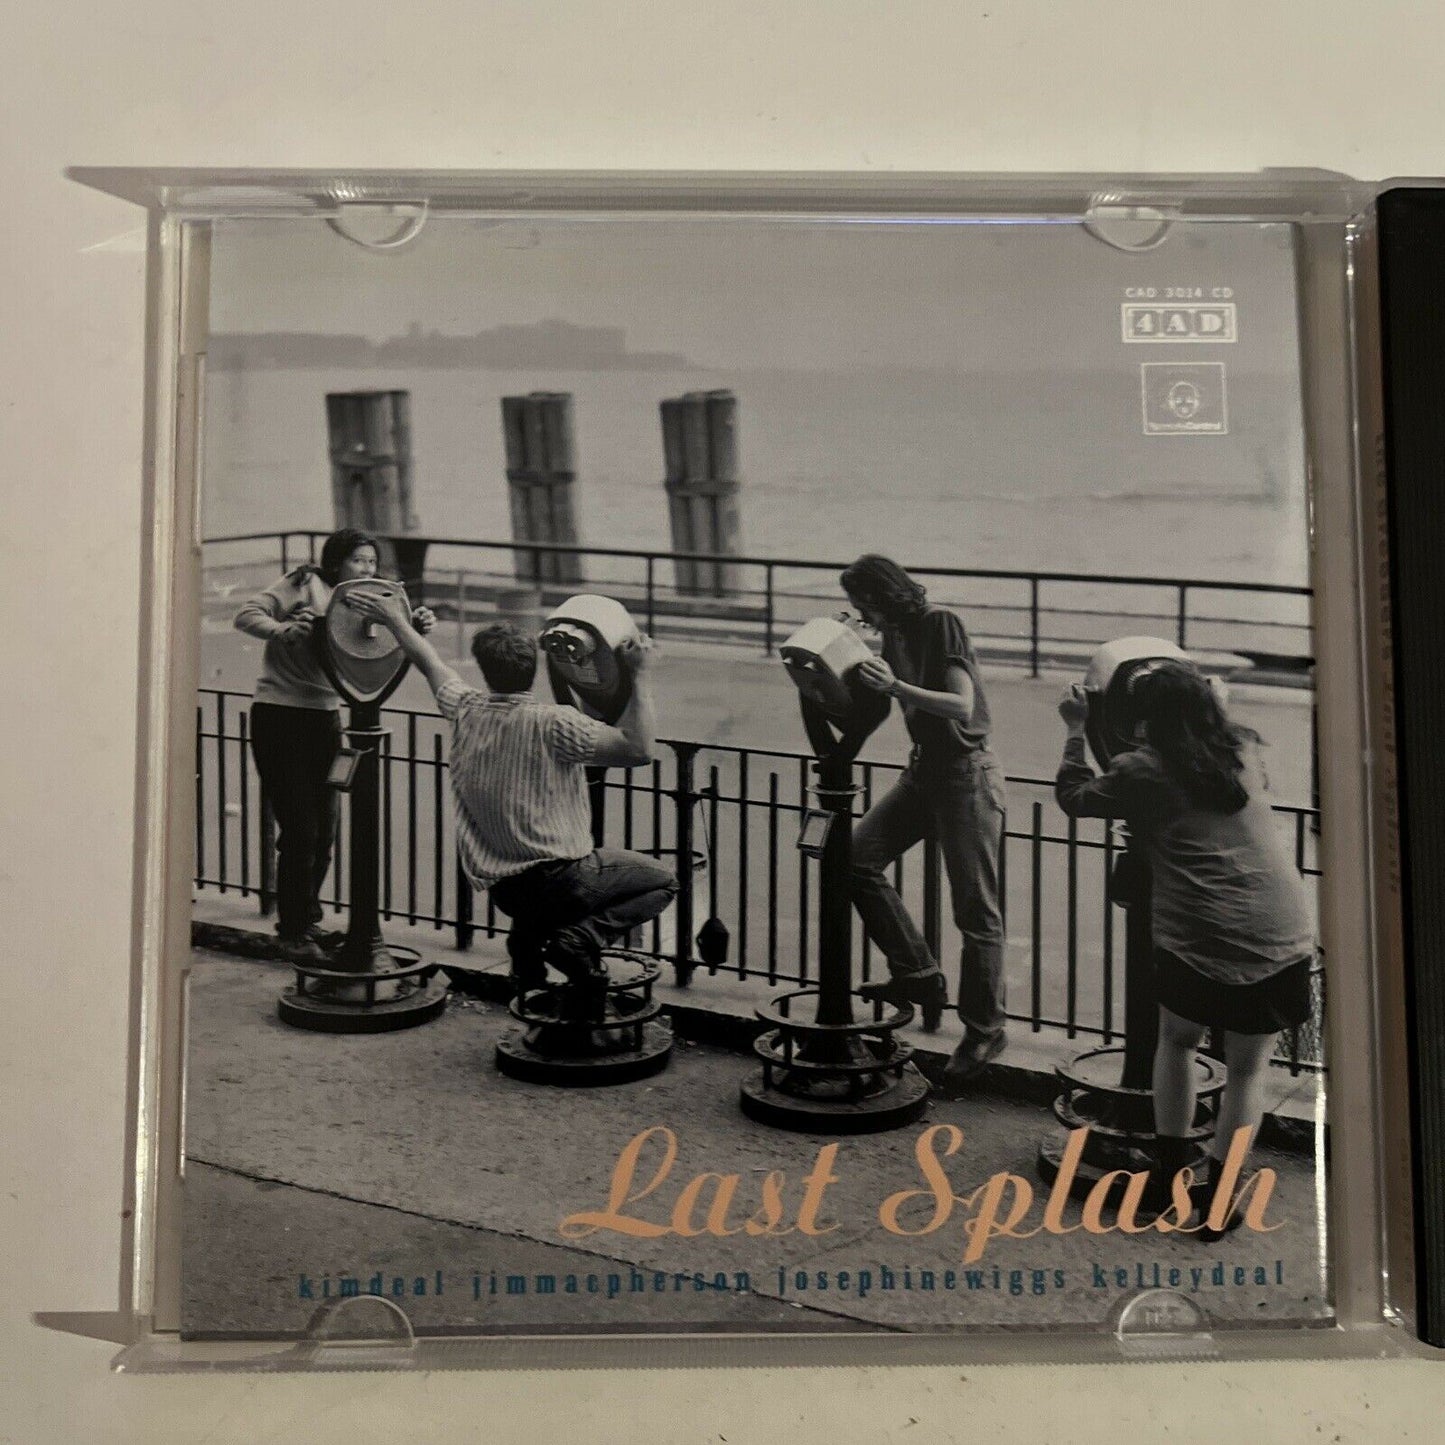 The Breeders – Last Splash (CD, 1993) Album